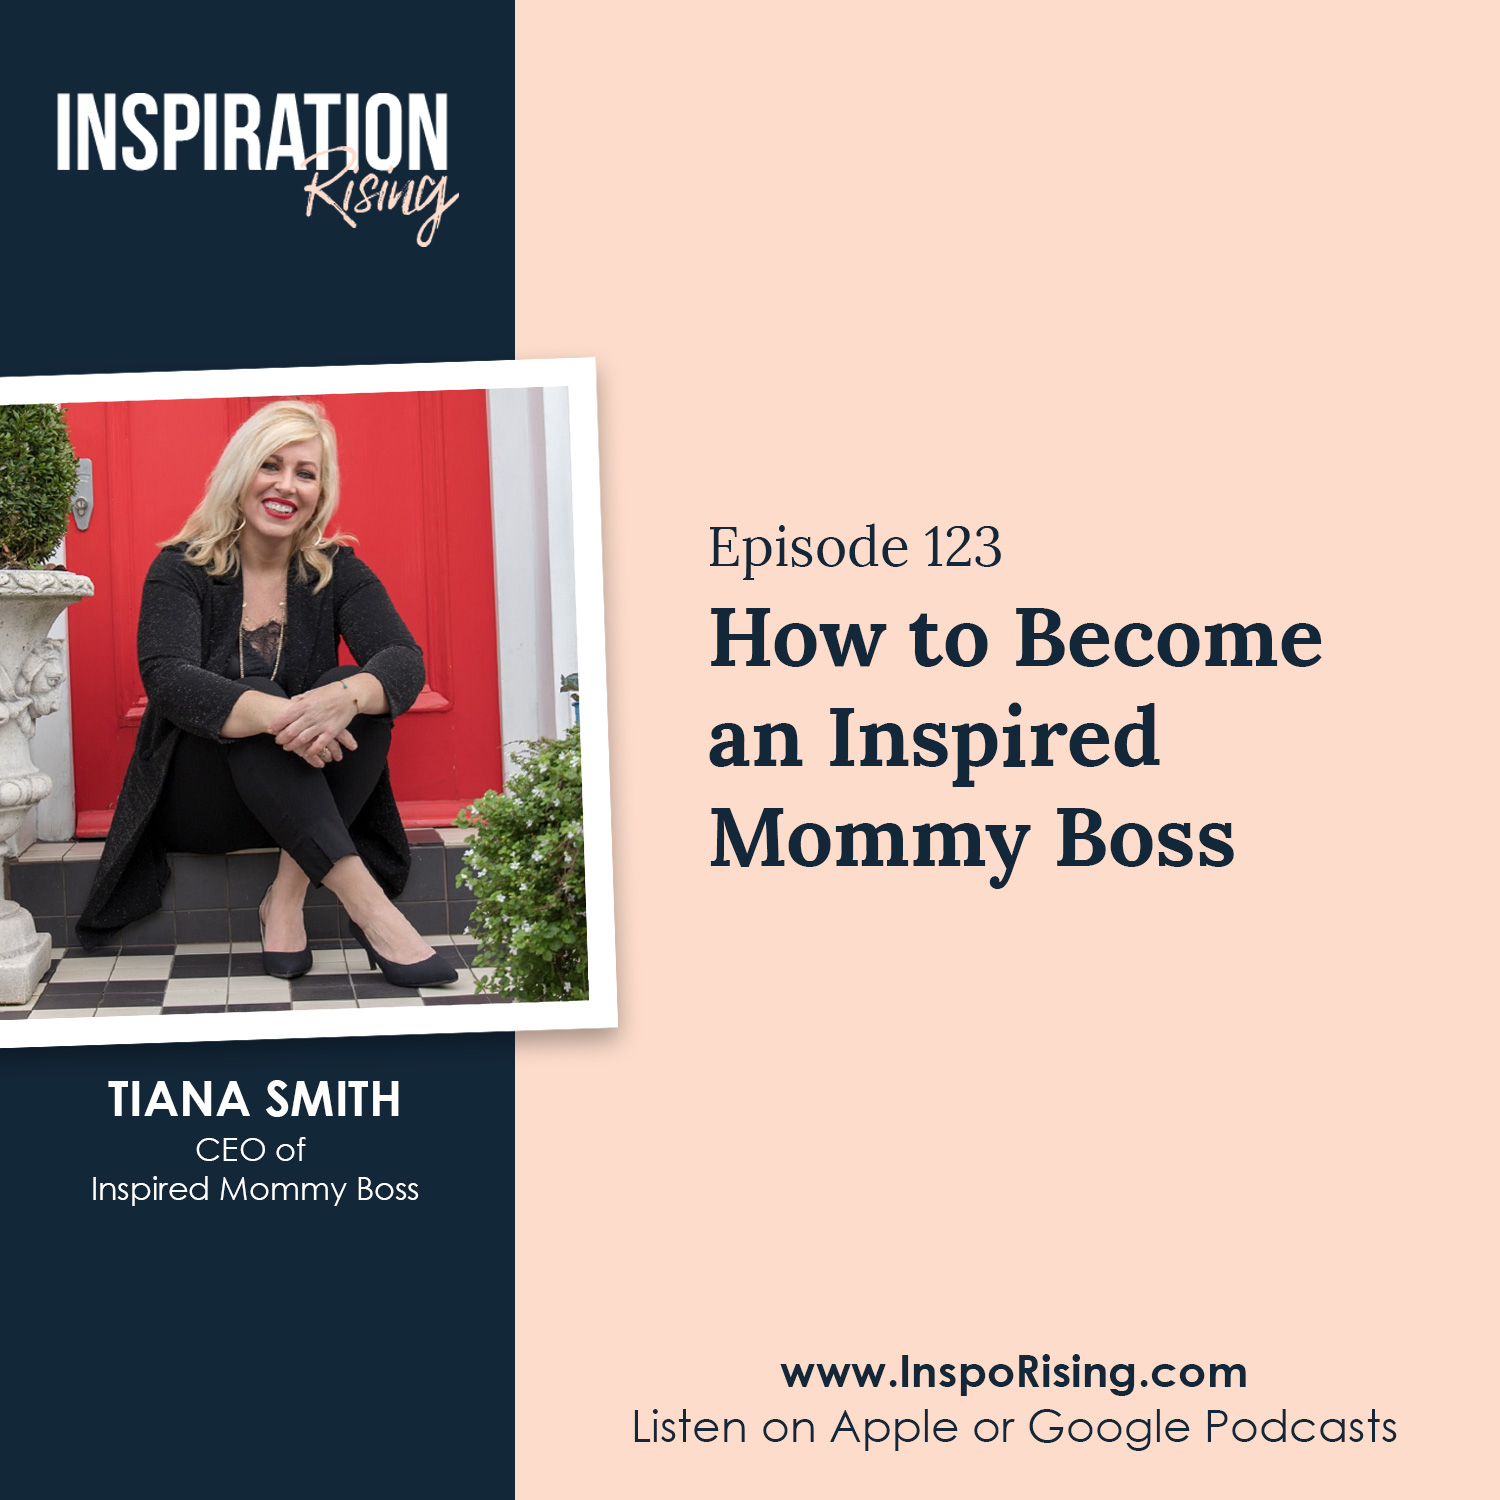 Tiana Smith - Inspired Mommy Boss